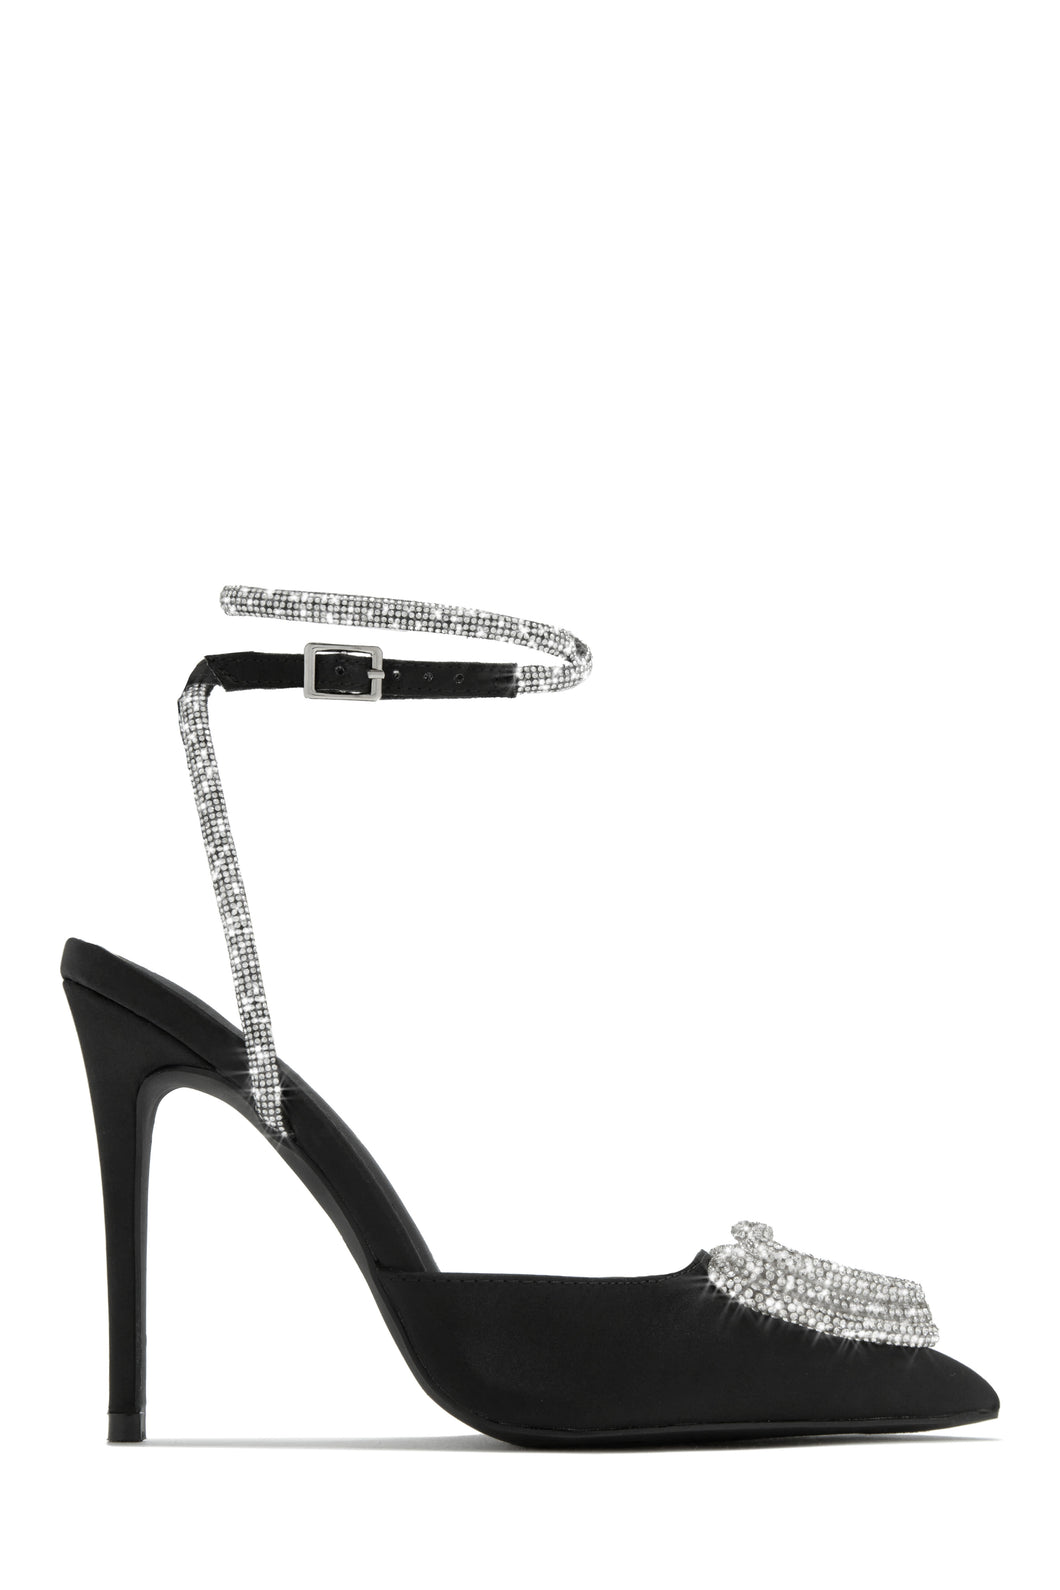 Black Heels with Embellished Detailing